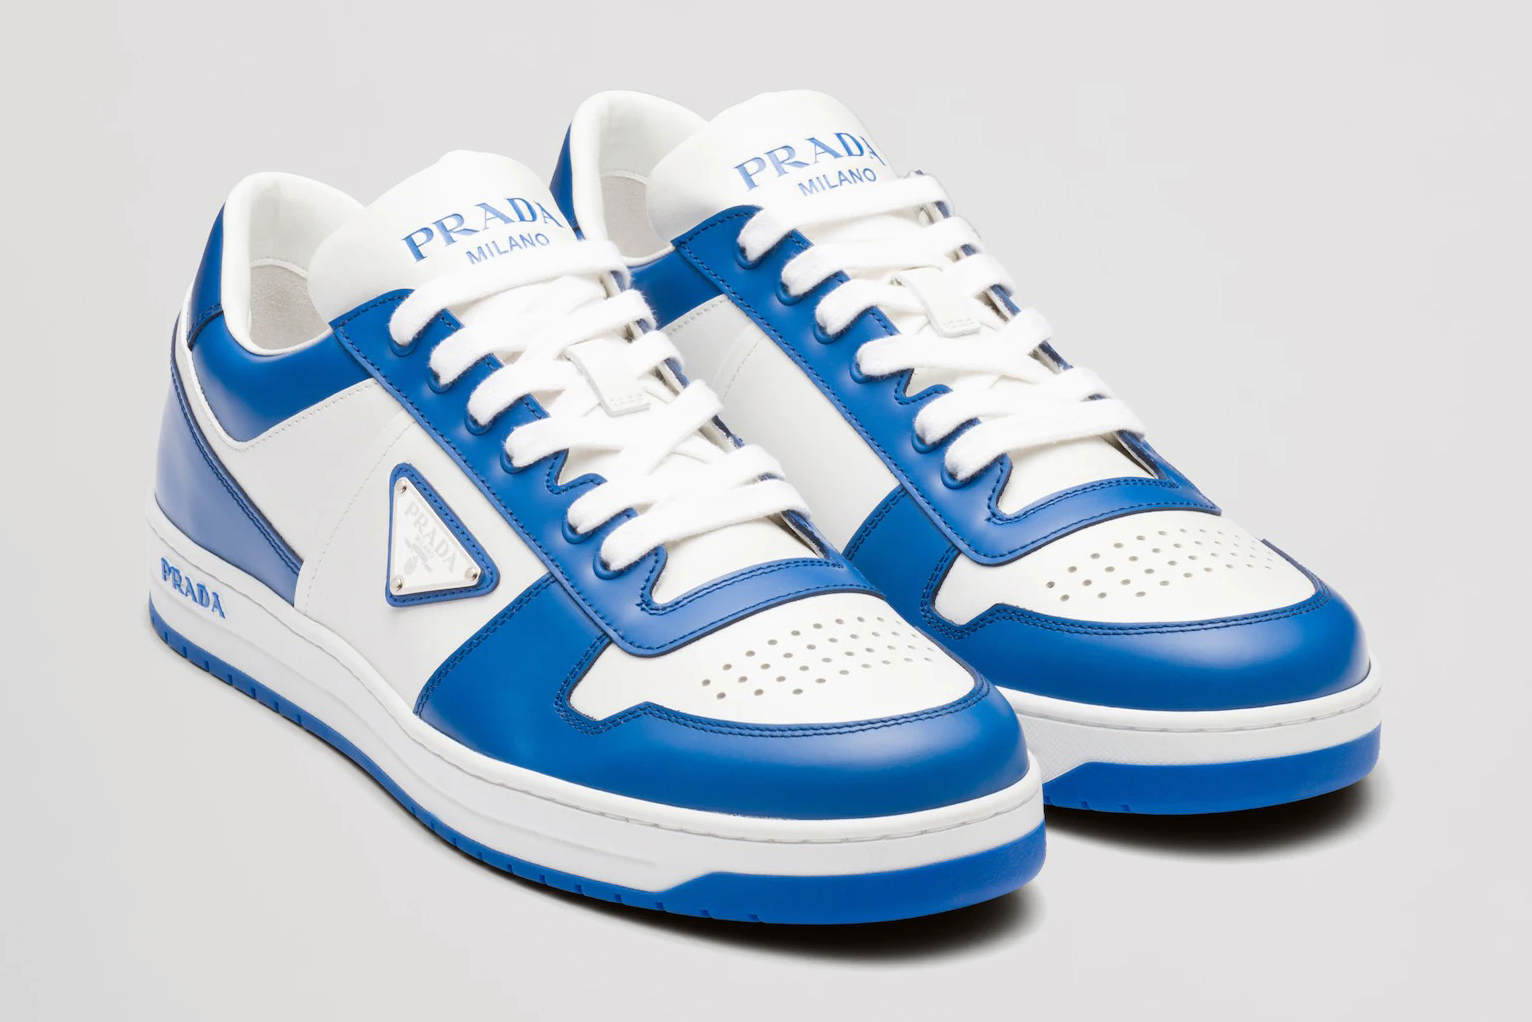 Prada's Downtown Sneakers Look Like Nike 1s